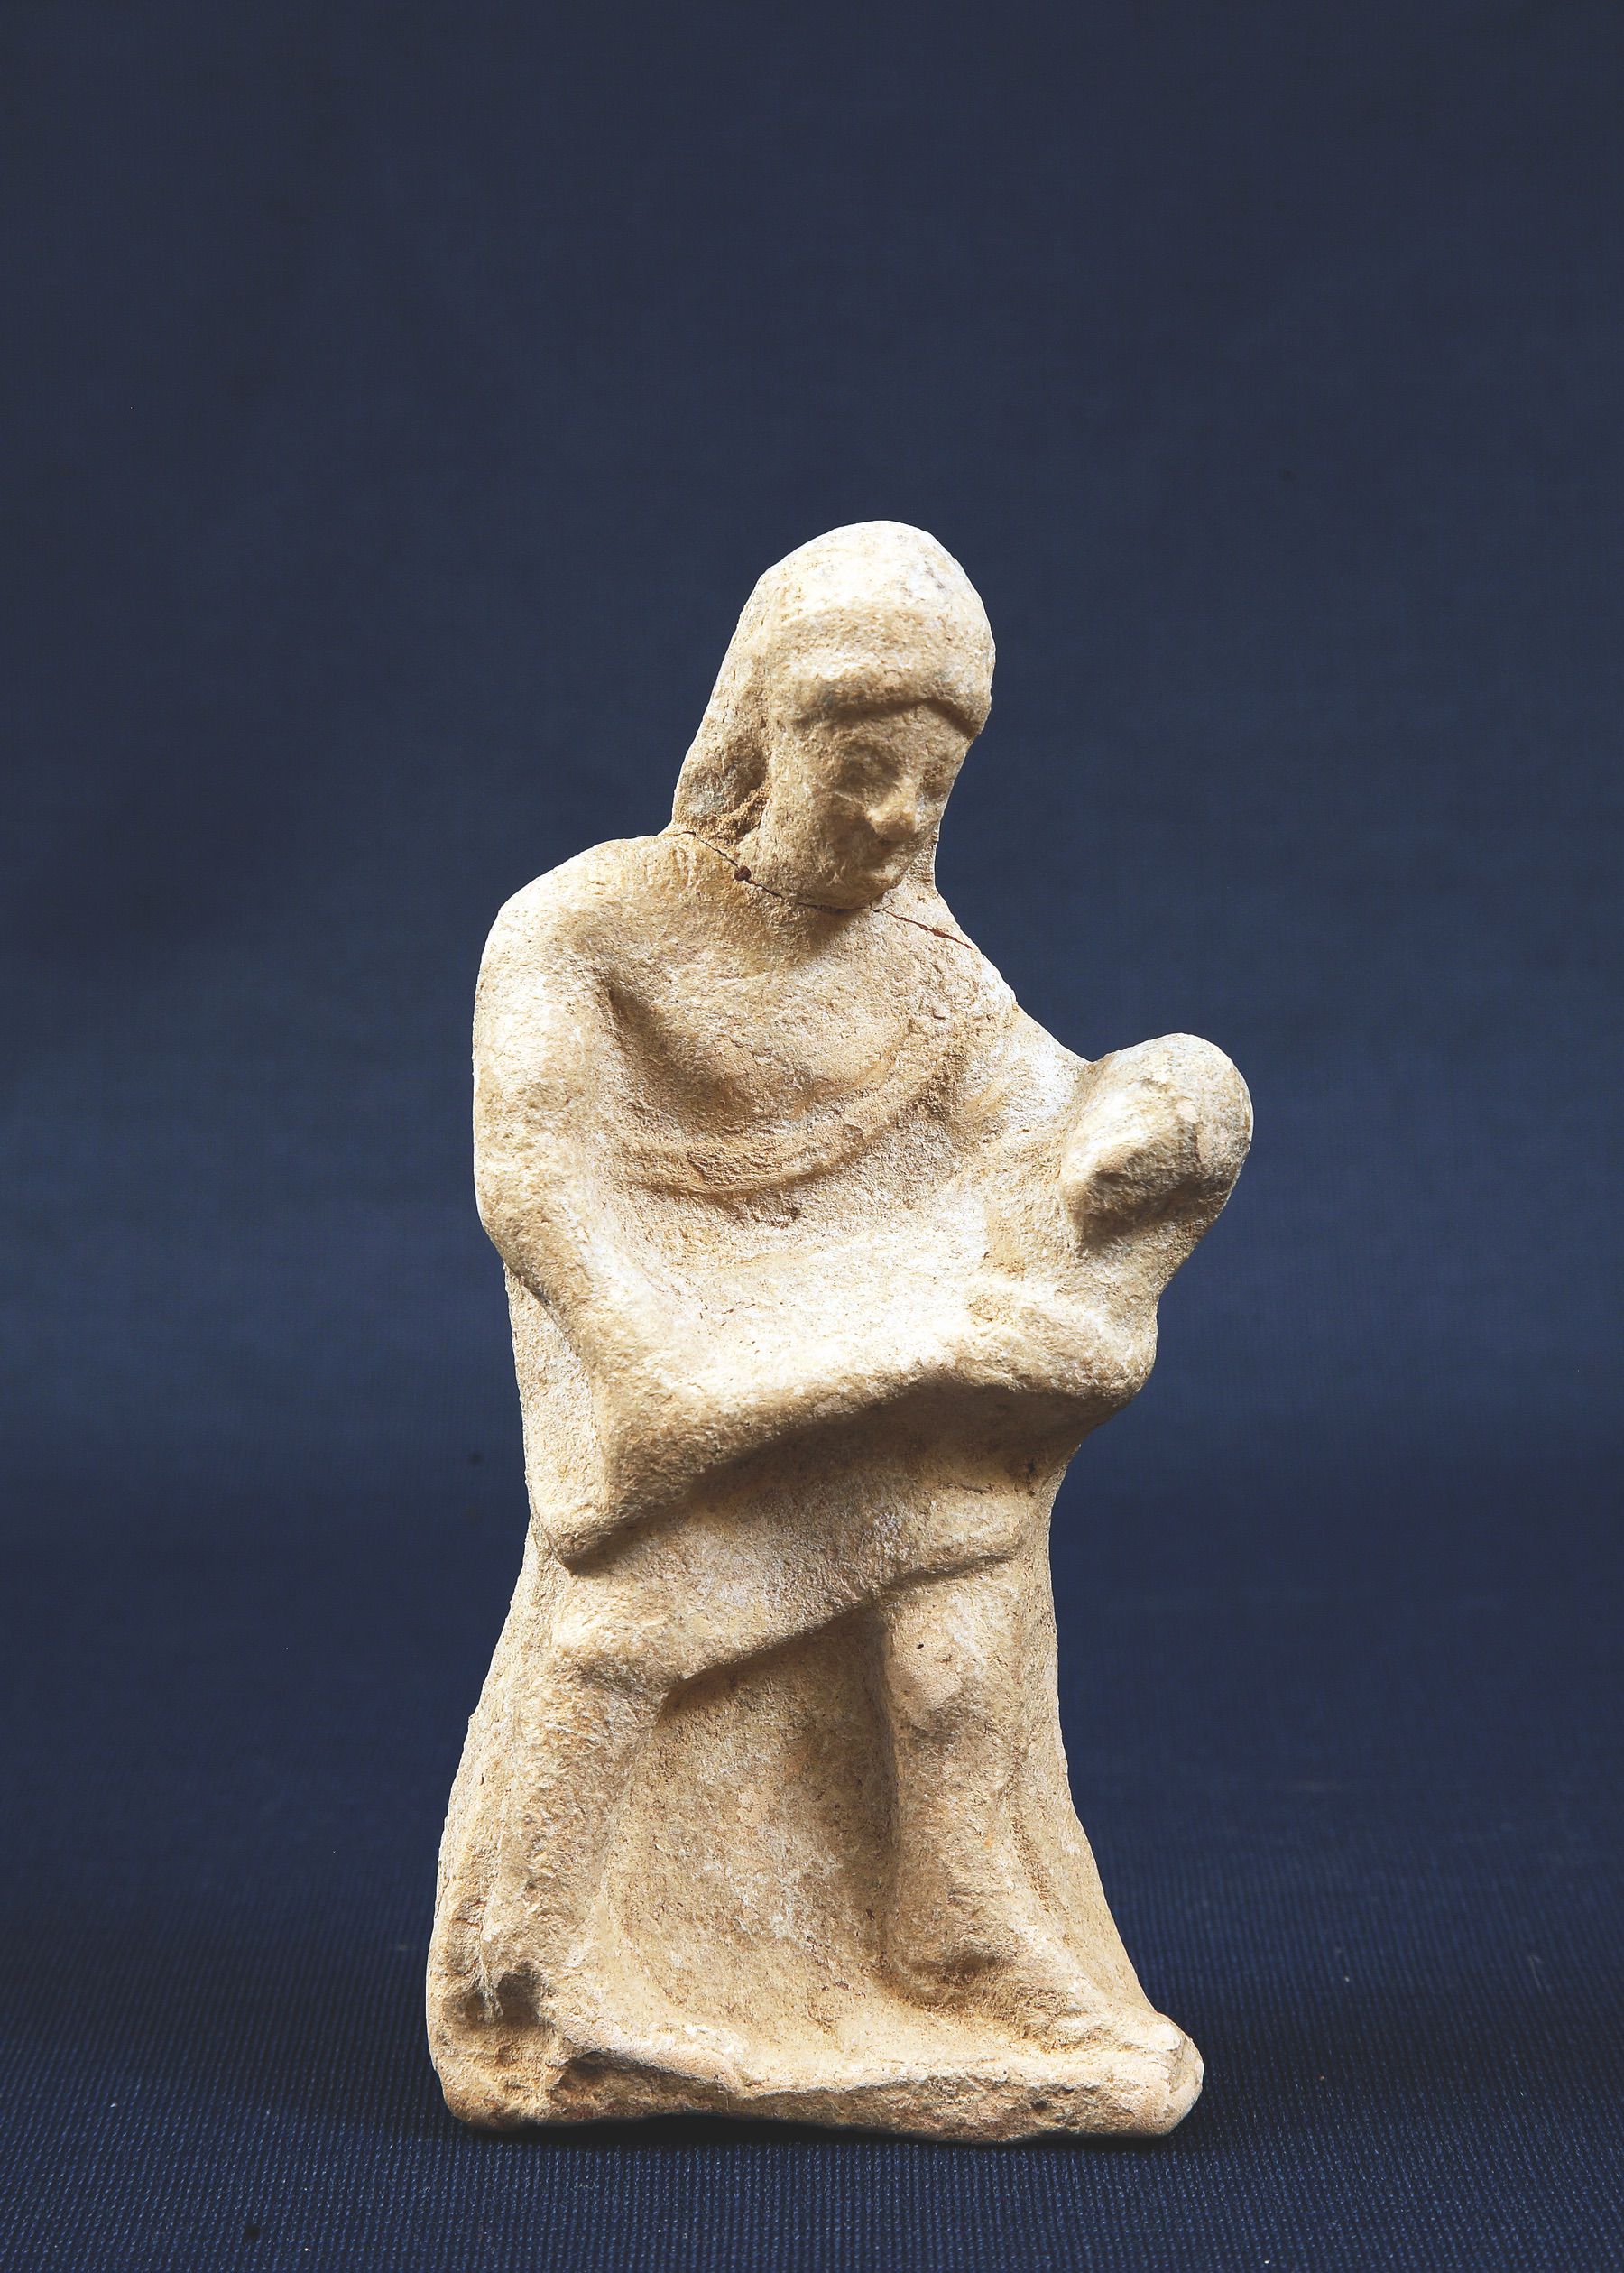 34. Figurina con bambino di terracotta. V sec.a.C.